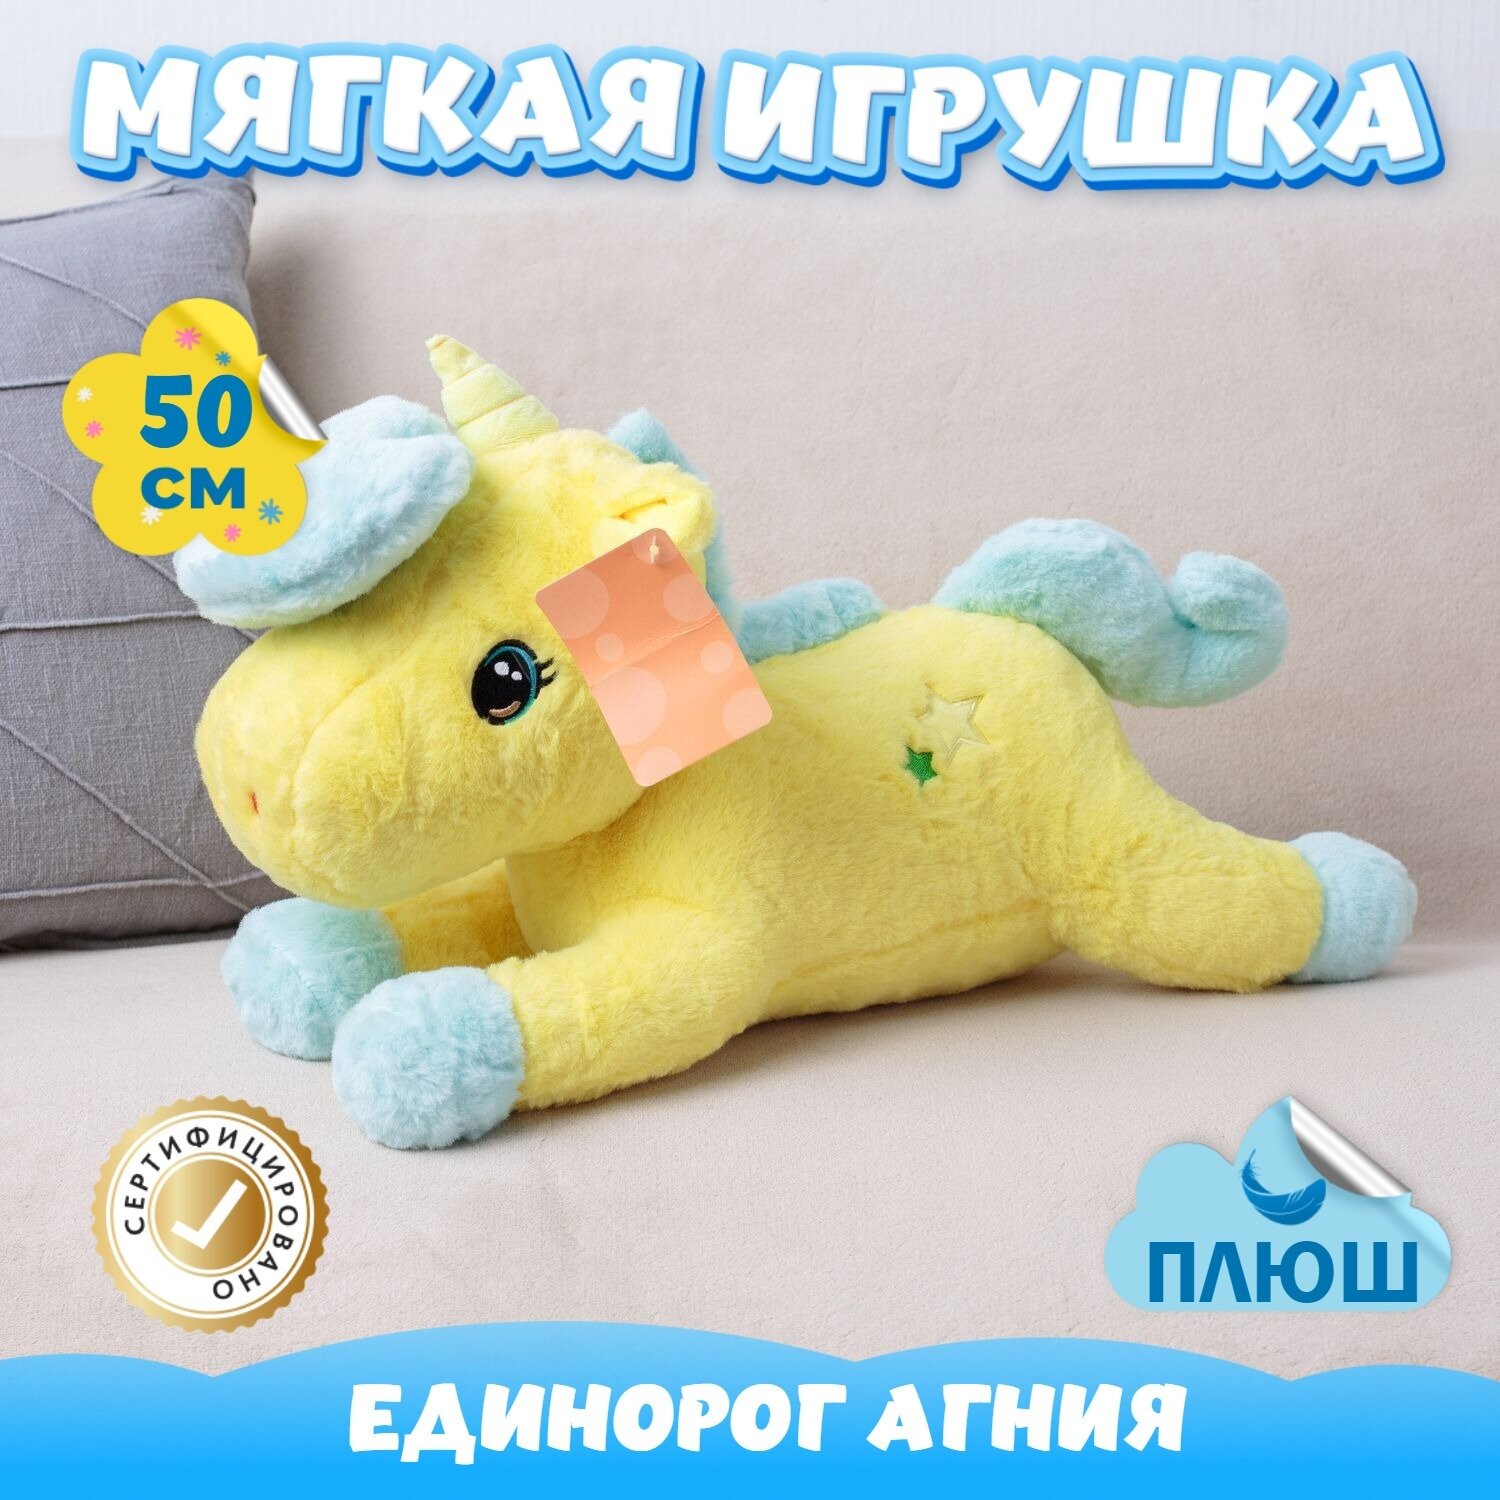 Мягкая игрушка Единорог для девочек мальчиков / Плюшевый Единорожка для детей KiDWoW желтый 50см